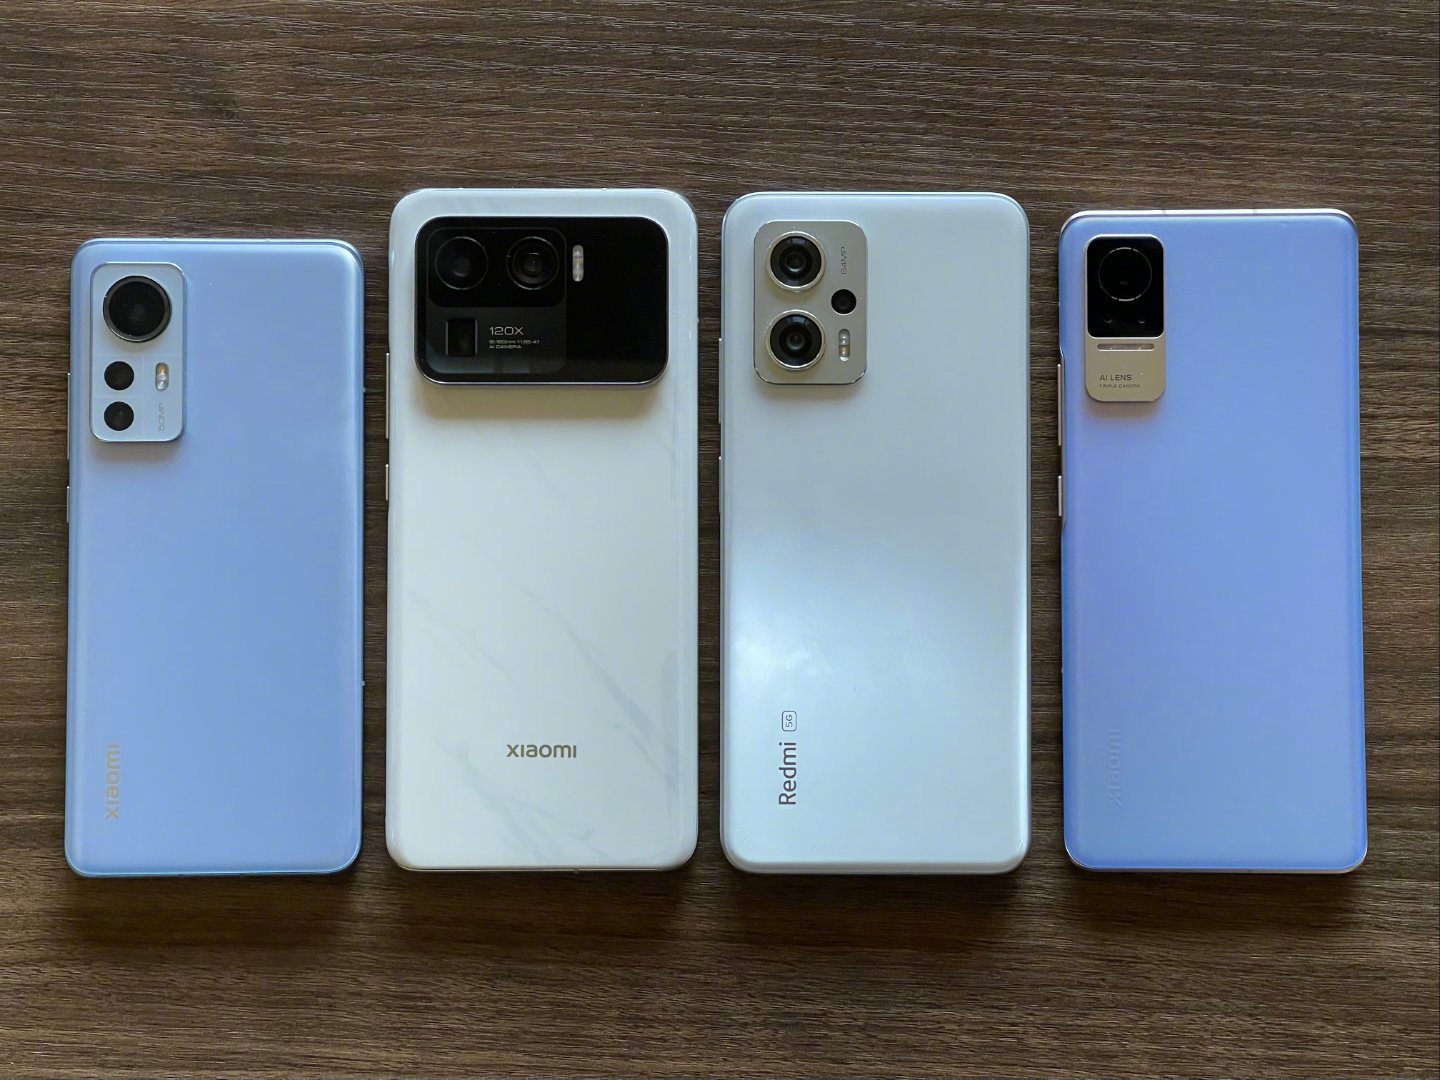 Gli smartphone Xiaomi del CEO Lei Jun: Xiaomi 12, Xiaomi Mi 11 Ultra, Redmi Note 11T Pro e Xiaomi Civi